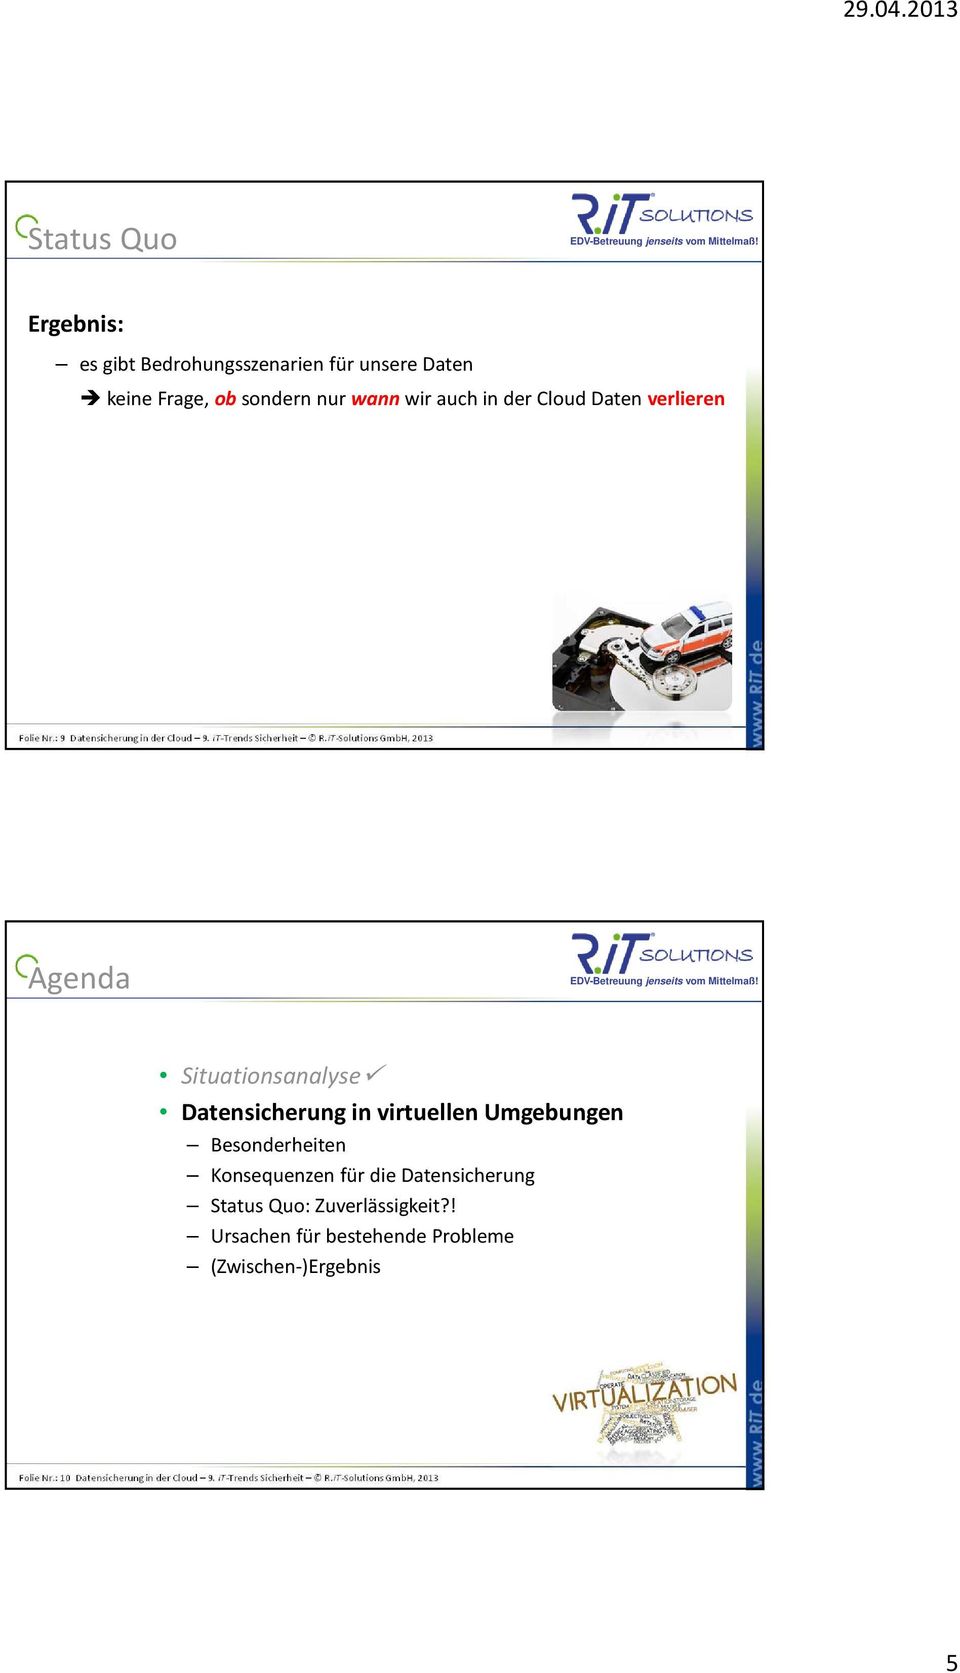 iT-Solutions GmbH, 2013 Agenda Situationsanalyse Datensicherung in virtuellen Umgebungen Besonderheiten Konsequenzen für die